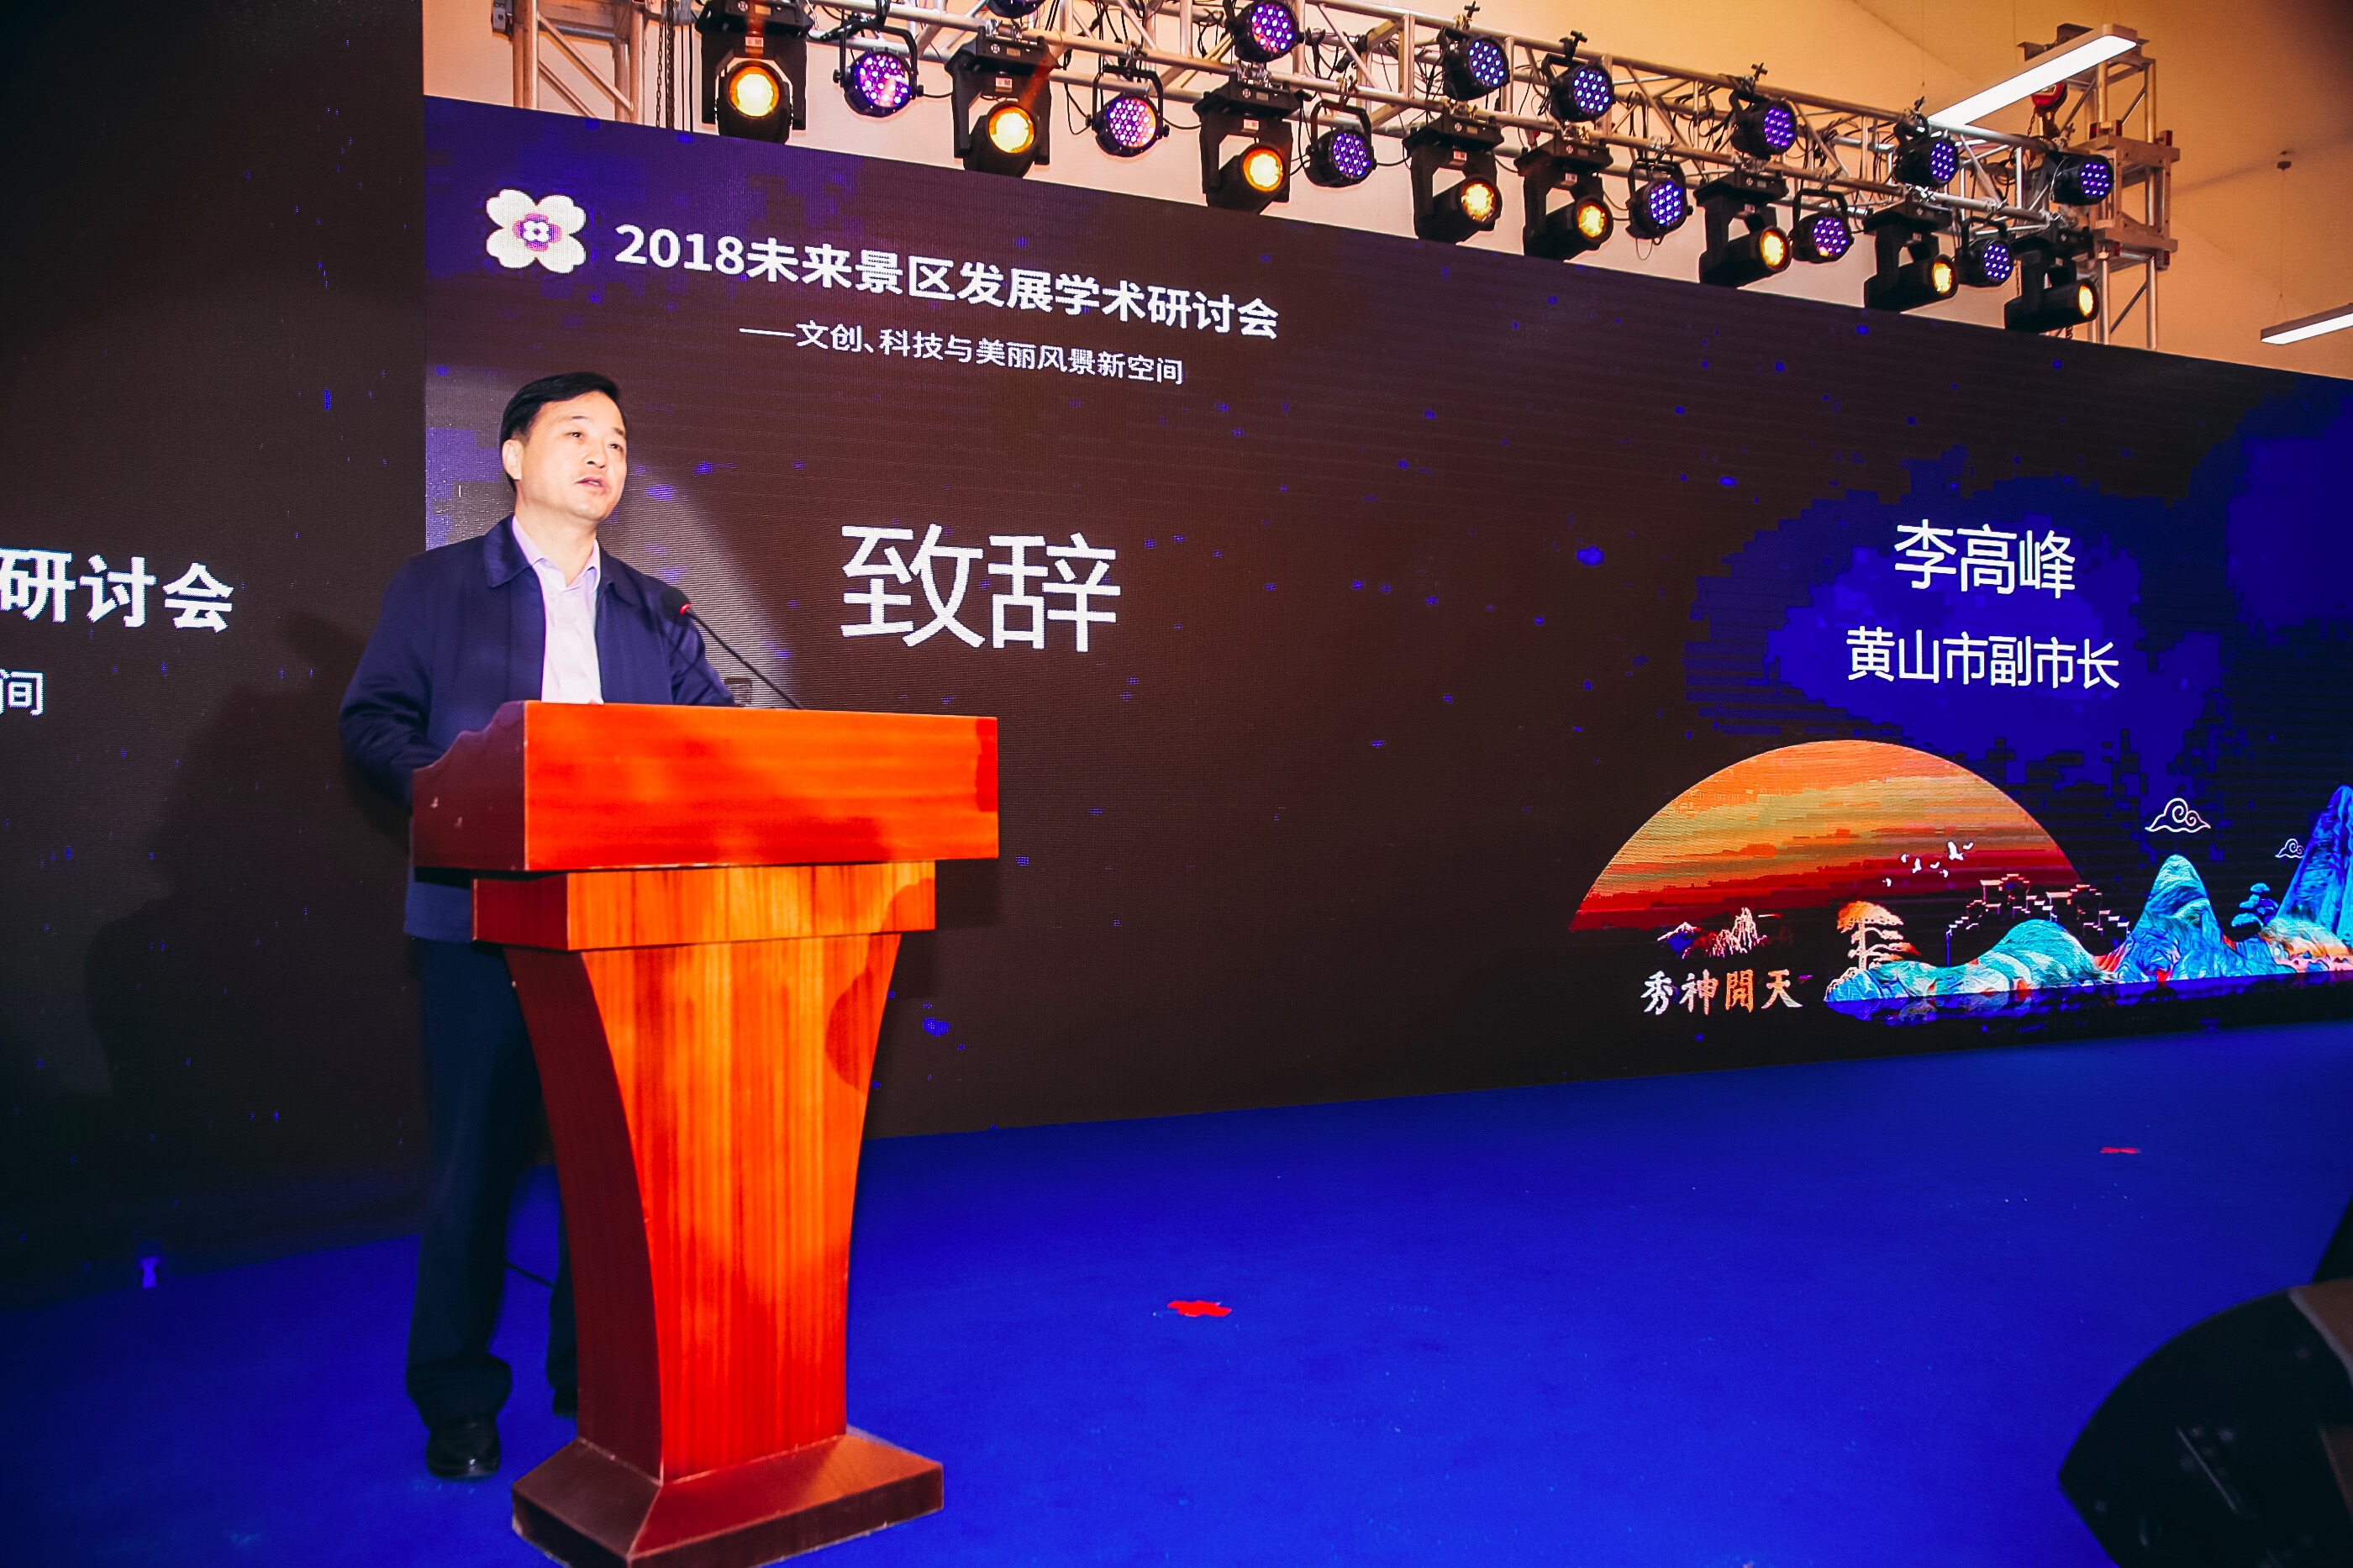 黄山市人民政府副市长李高峰：积极实施“旅游+”战略 加快建设世界一流旅游目的地